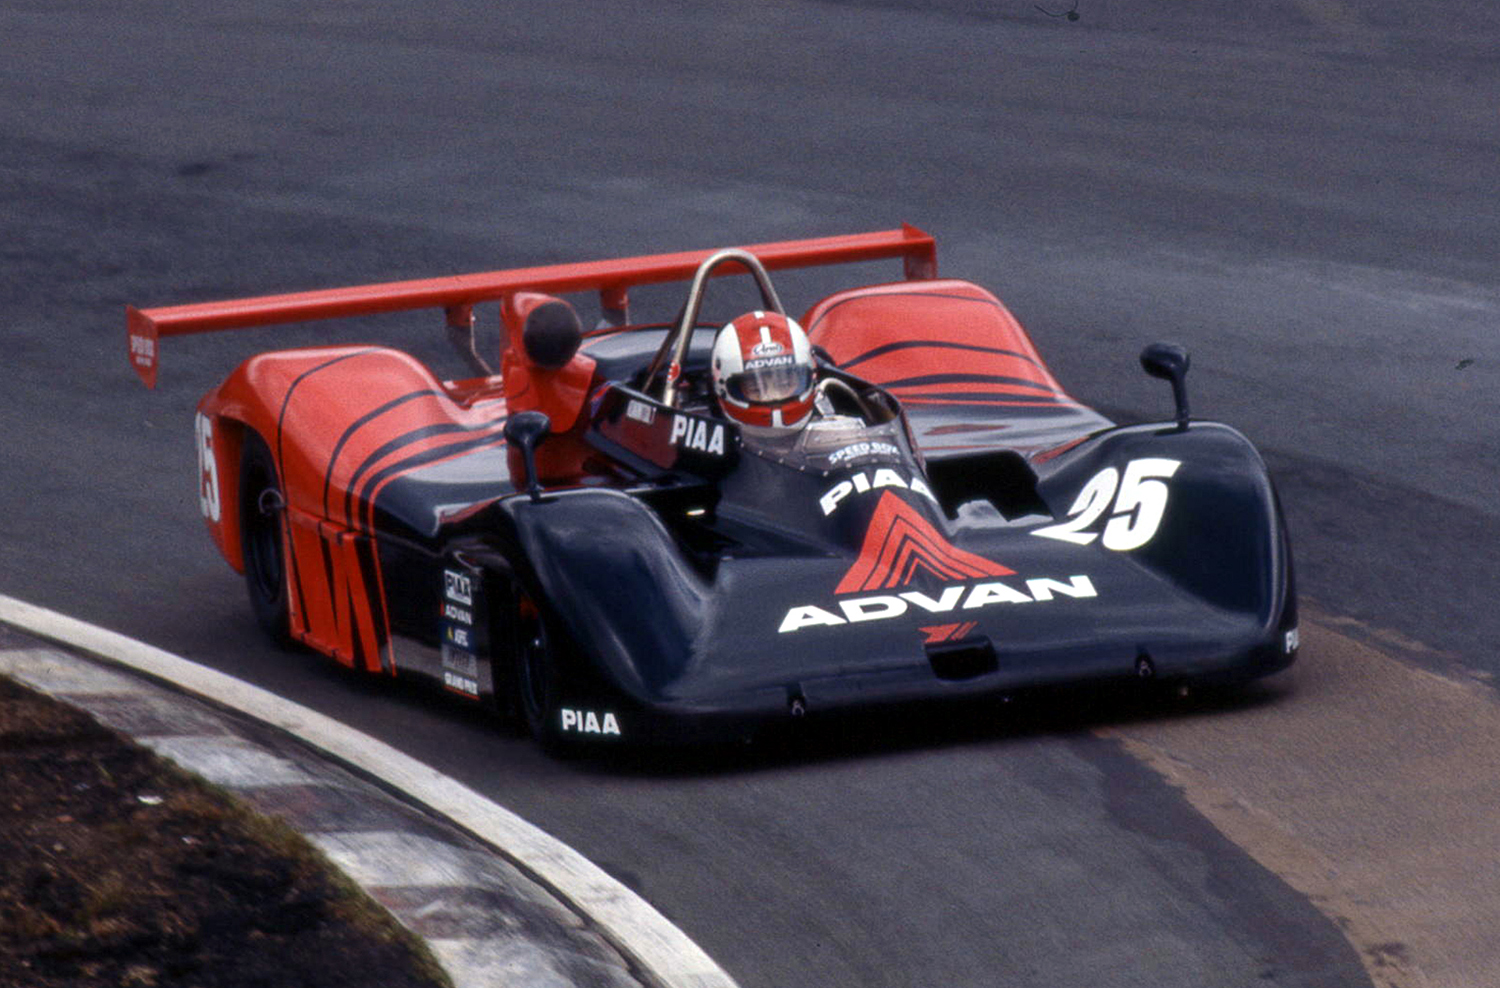 その速さとカラーリングに憧れた印象深い「ADVAN」カラーのレースマシン